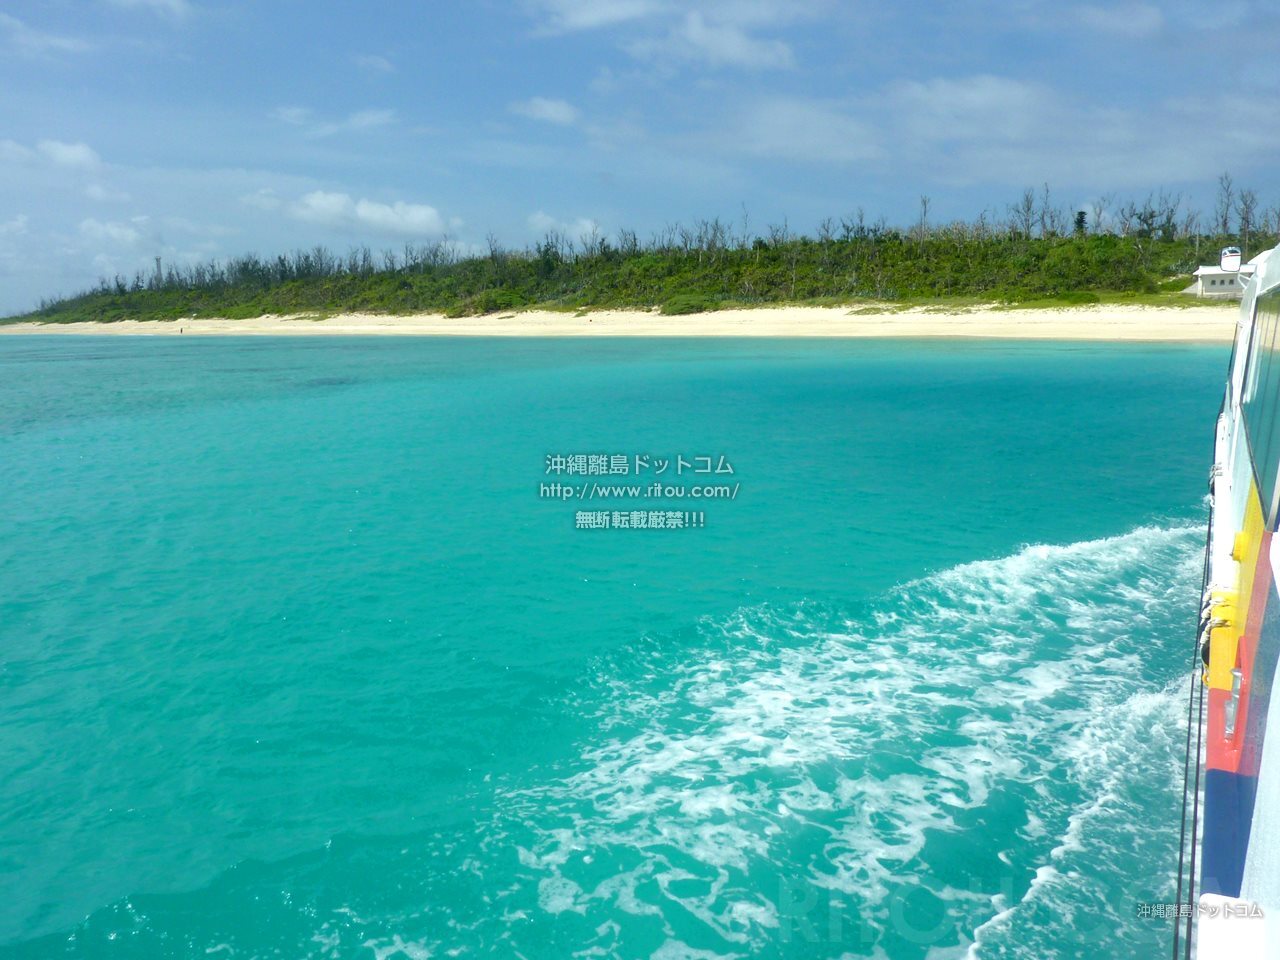 青い海へ誘う絶景の道 沖縄 水納島 の魅力に会いに行こう 本島周辺離島水納島の旅行記 旅行ガイド